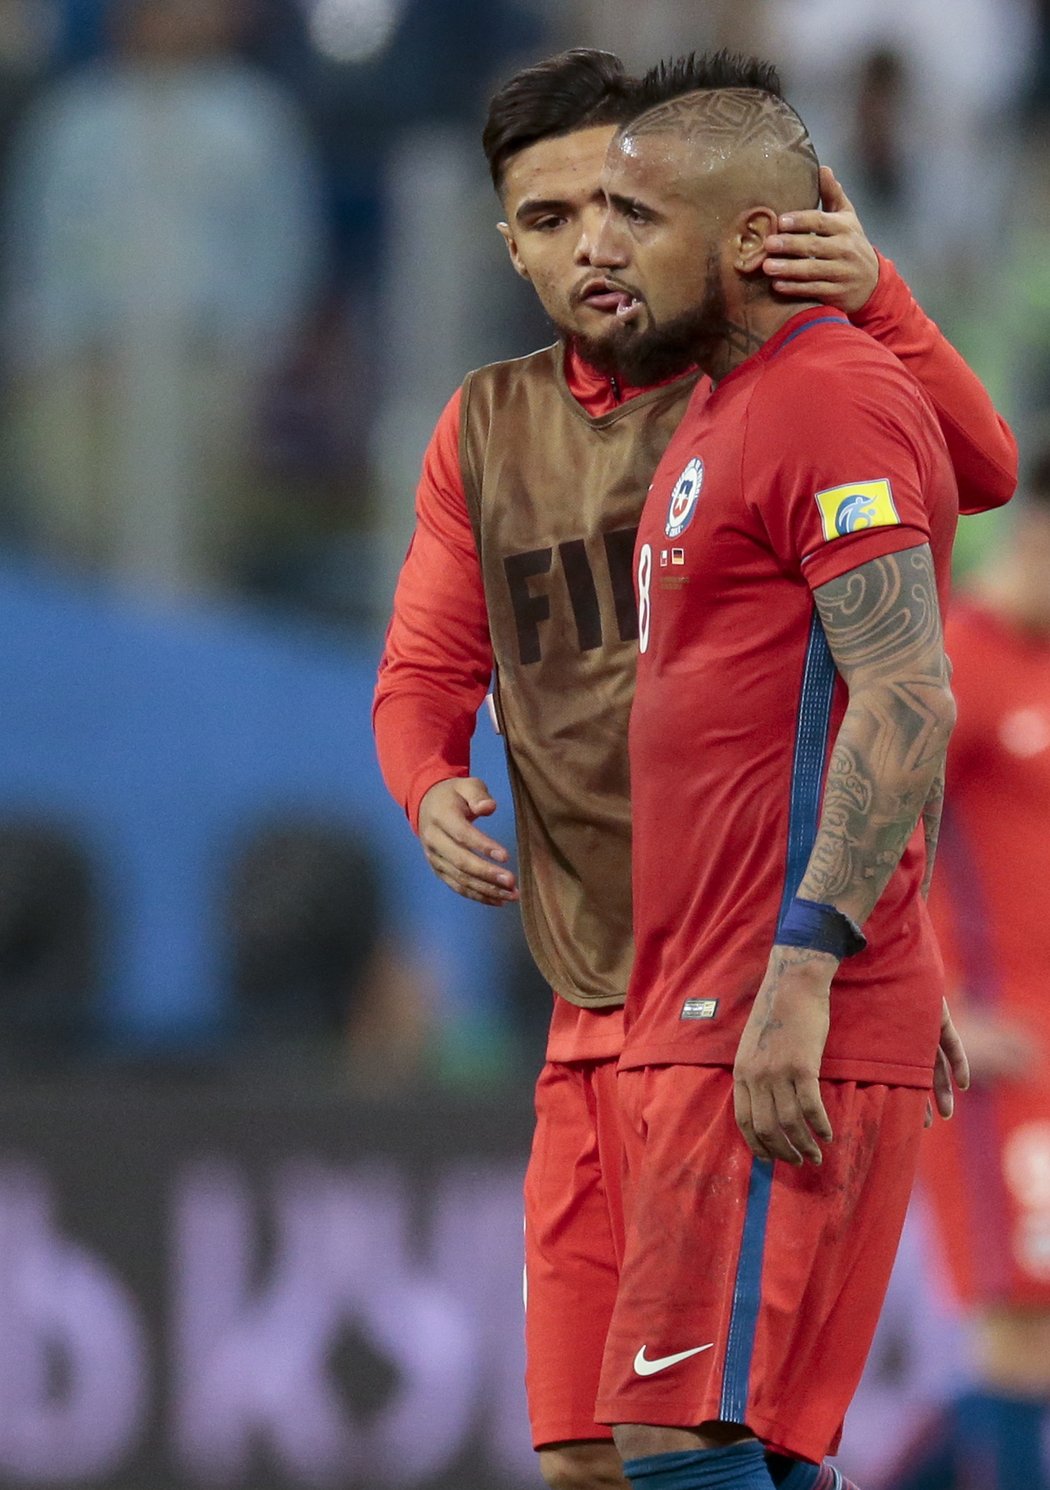 Chilský smutek po prohraném finále turnaje FIFA nad Německem